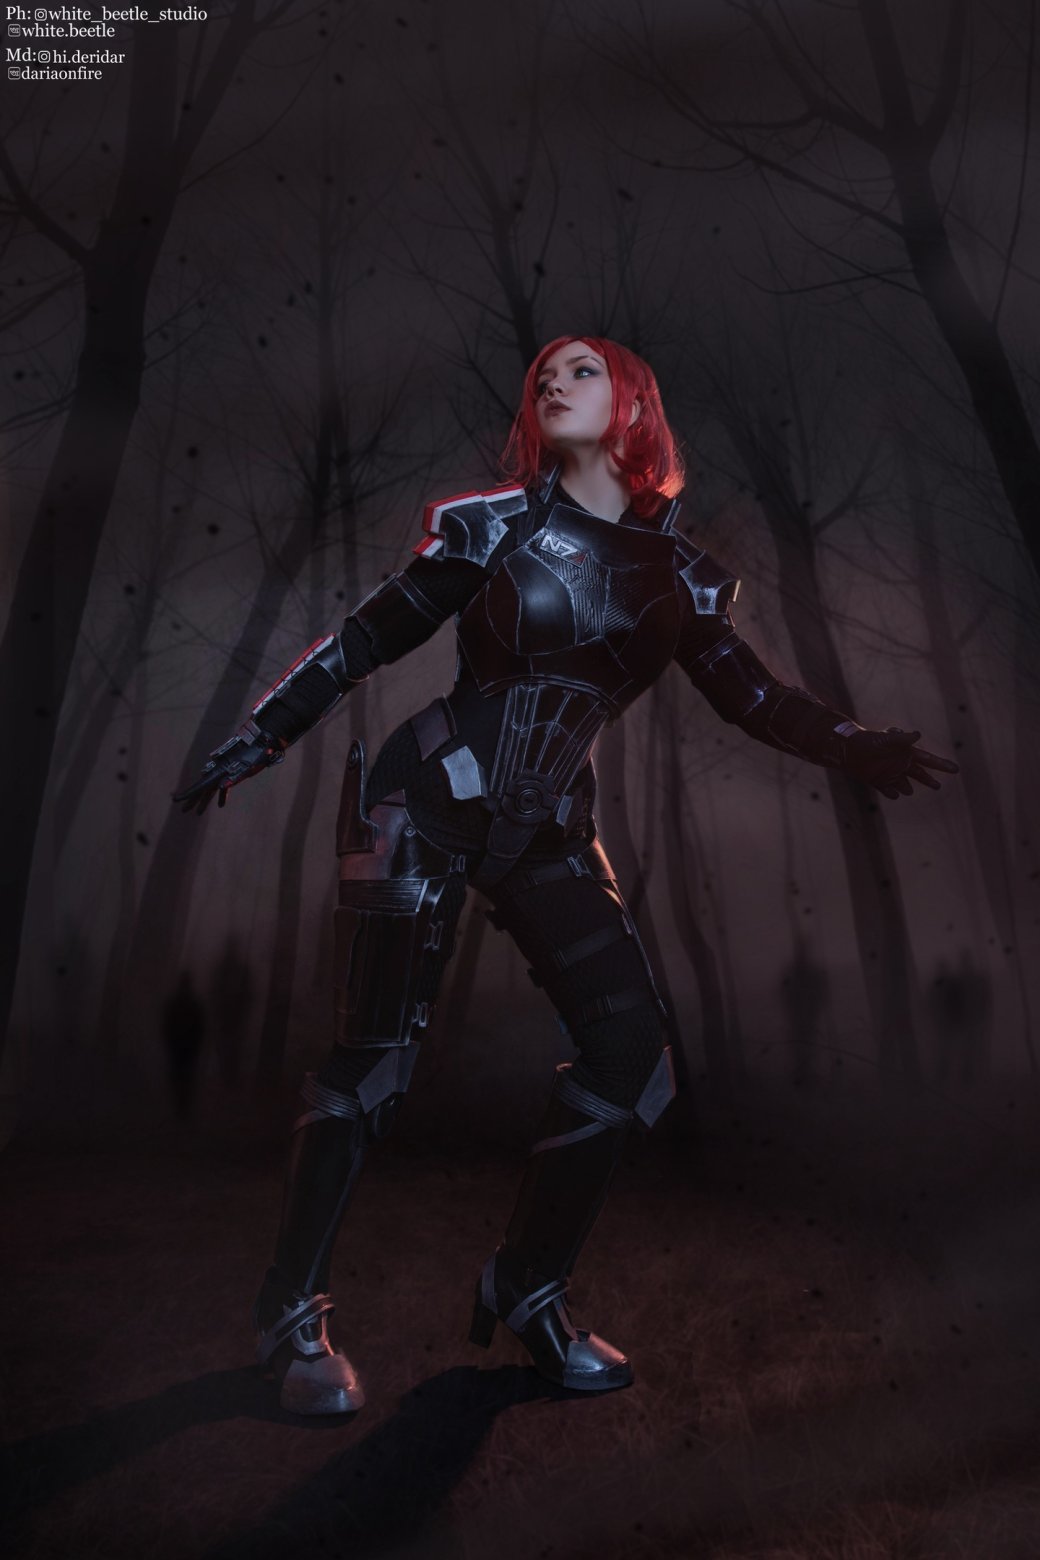 Галерея Косплеерша выпустила снимки в образе женской версии Капитана Шепард из Mass Effect - 10 фото